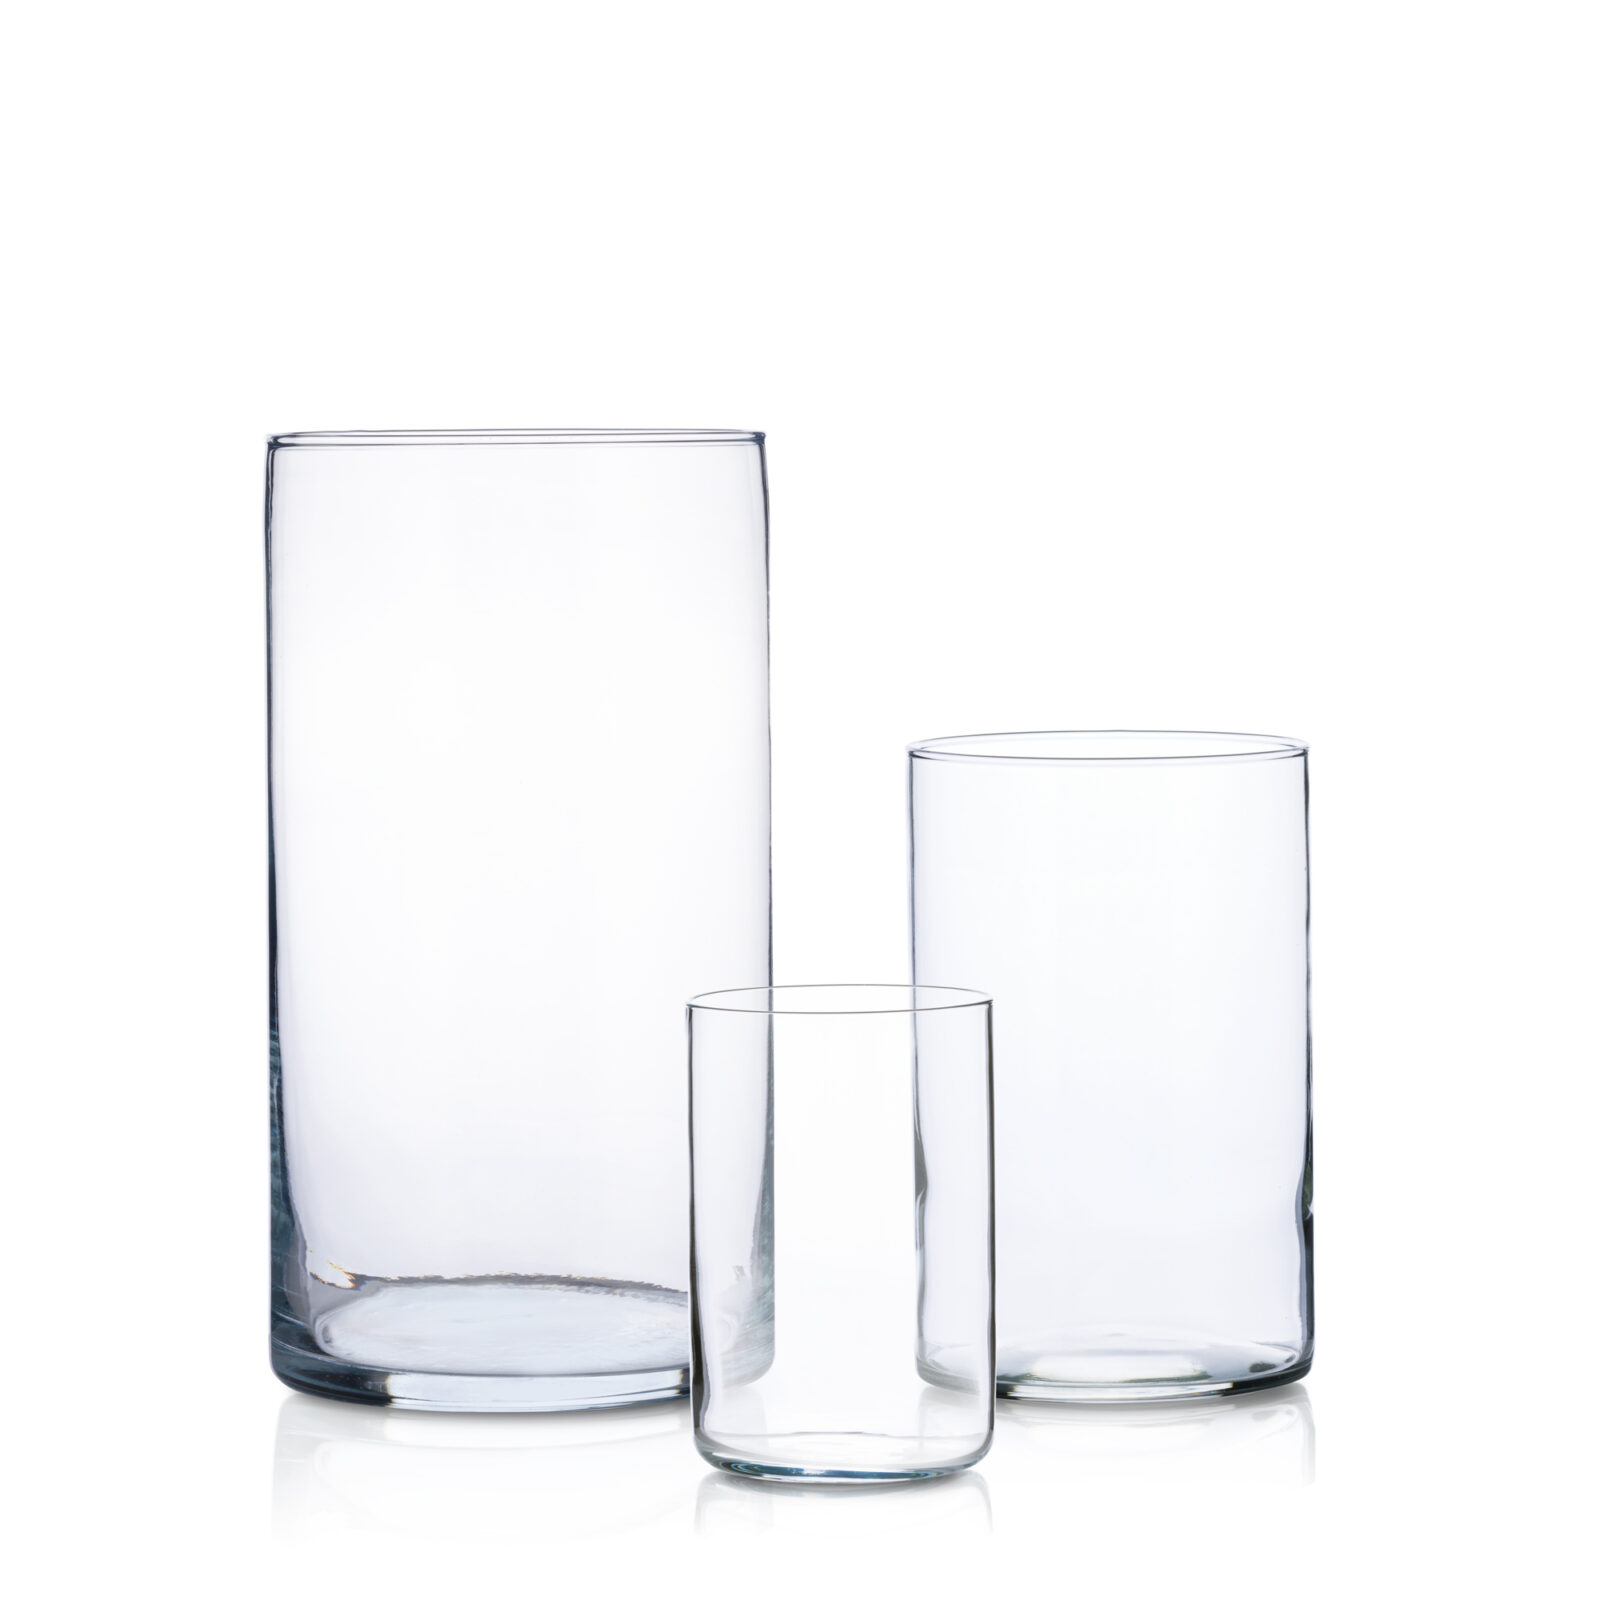 Zestaw tub szklanych 30-21-15 - 16 kompletów po 3 szt.